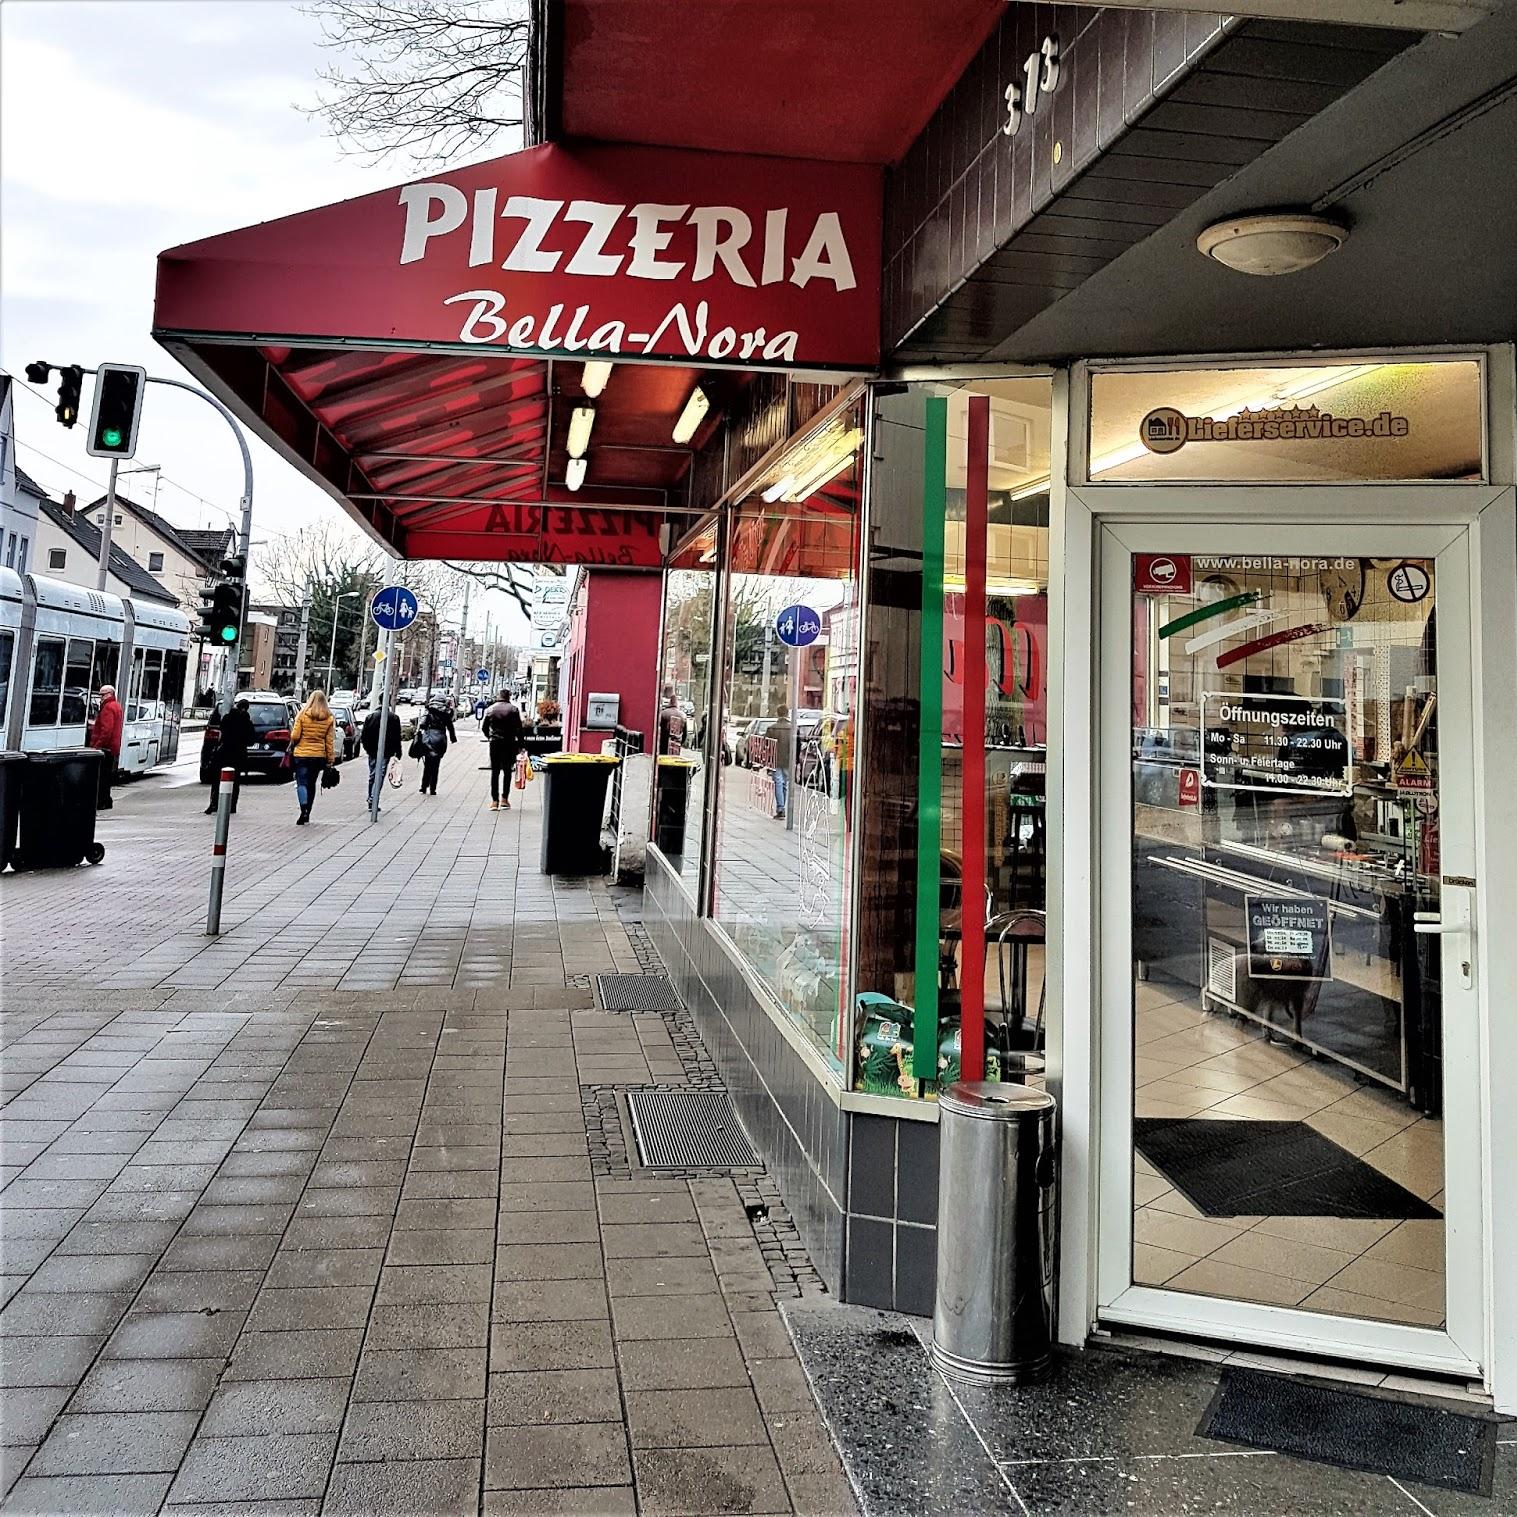 Restaurant "Pizzeria Bella Nora" in Gelsenkirchen